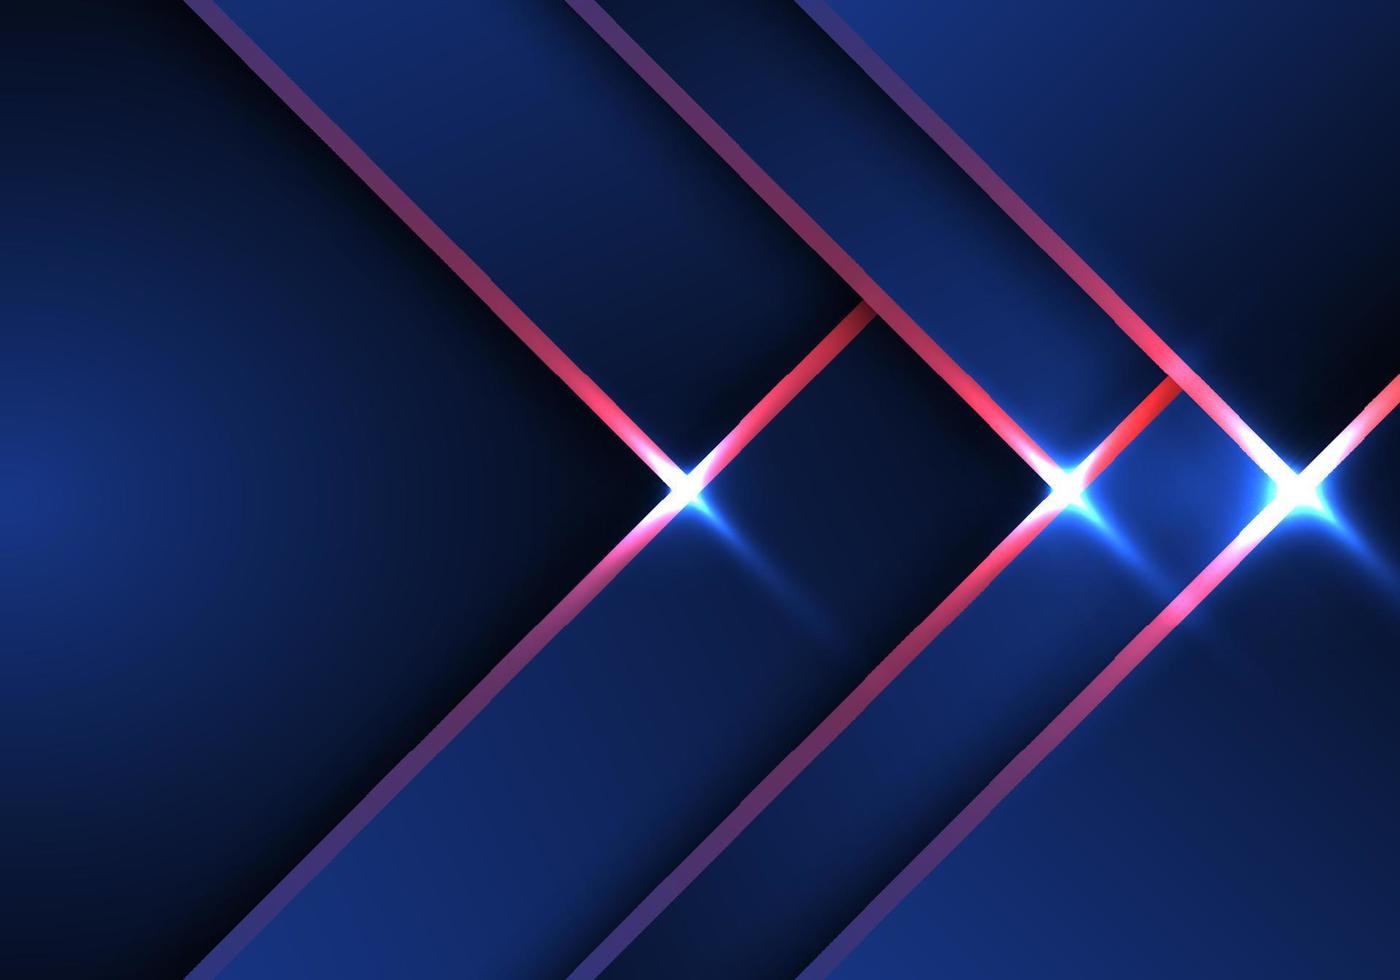 abstracte technologie concept blauwe en rode pijl strepen patroon achtergrond met lichteffect vector